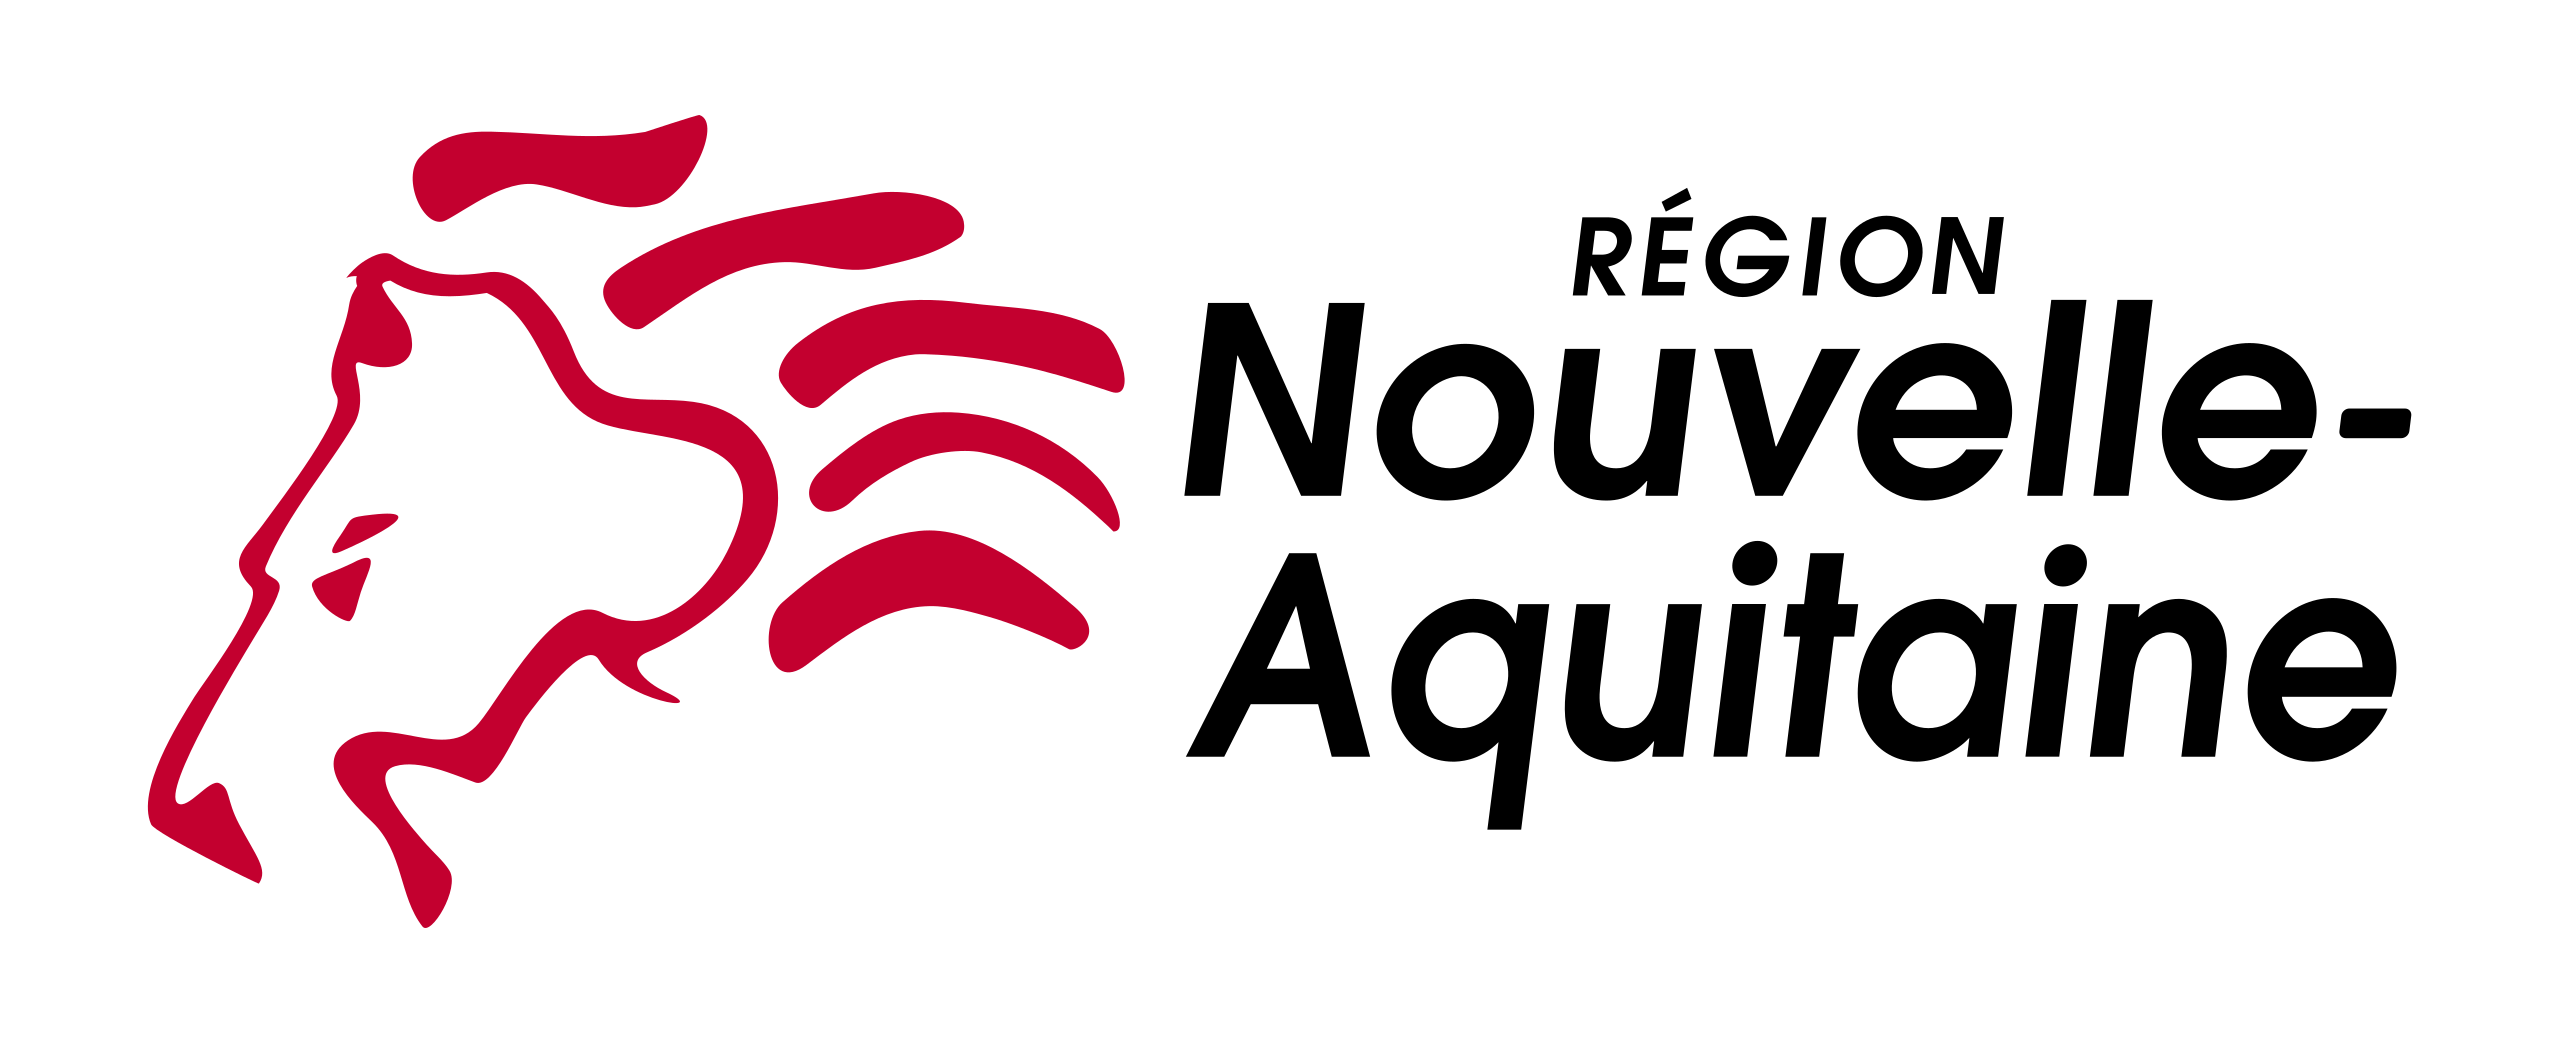 Région Nouvelle Aquitaine Logo